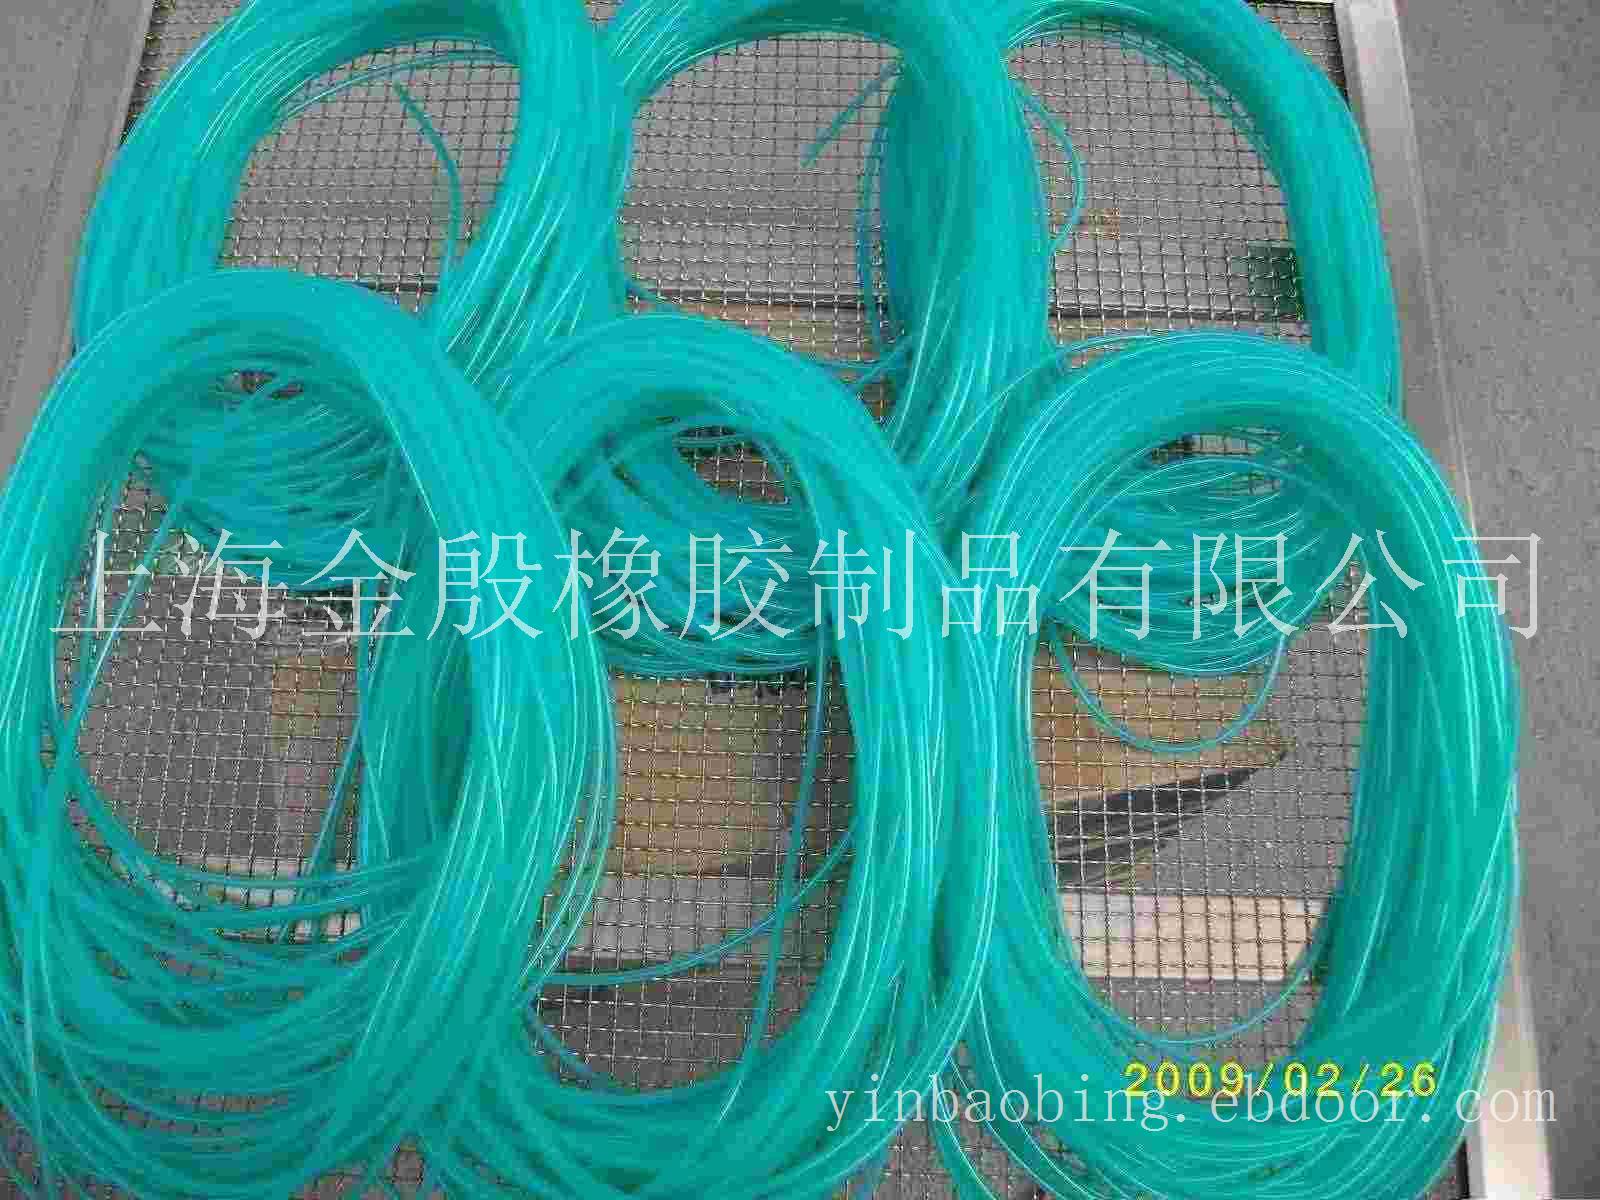 上海硅胶管供应商_优质硅胶管_专业硅胶管批发公司_上海硅胶管销售